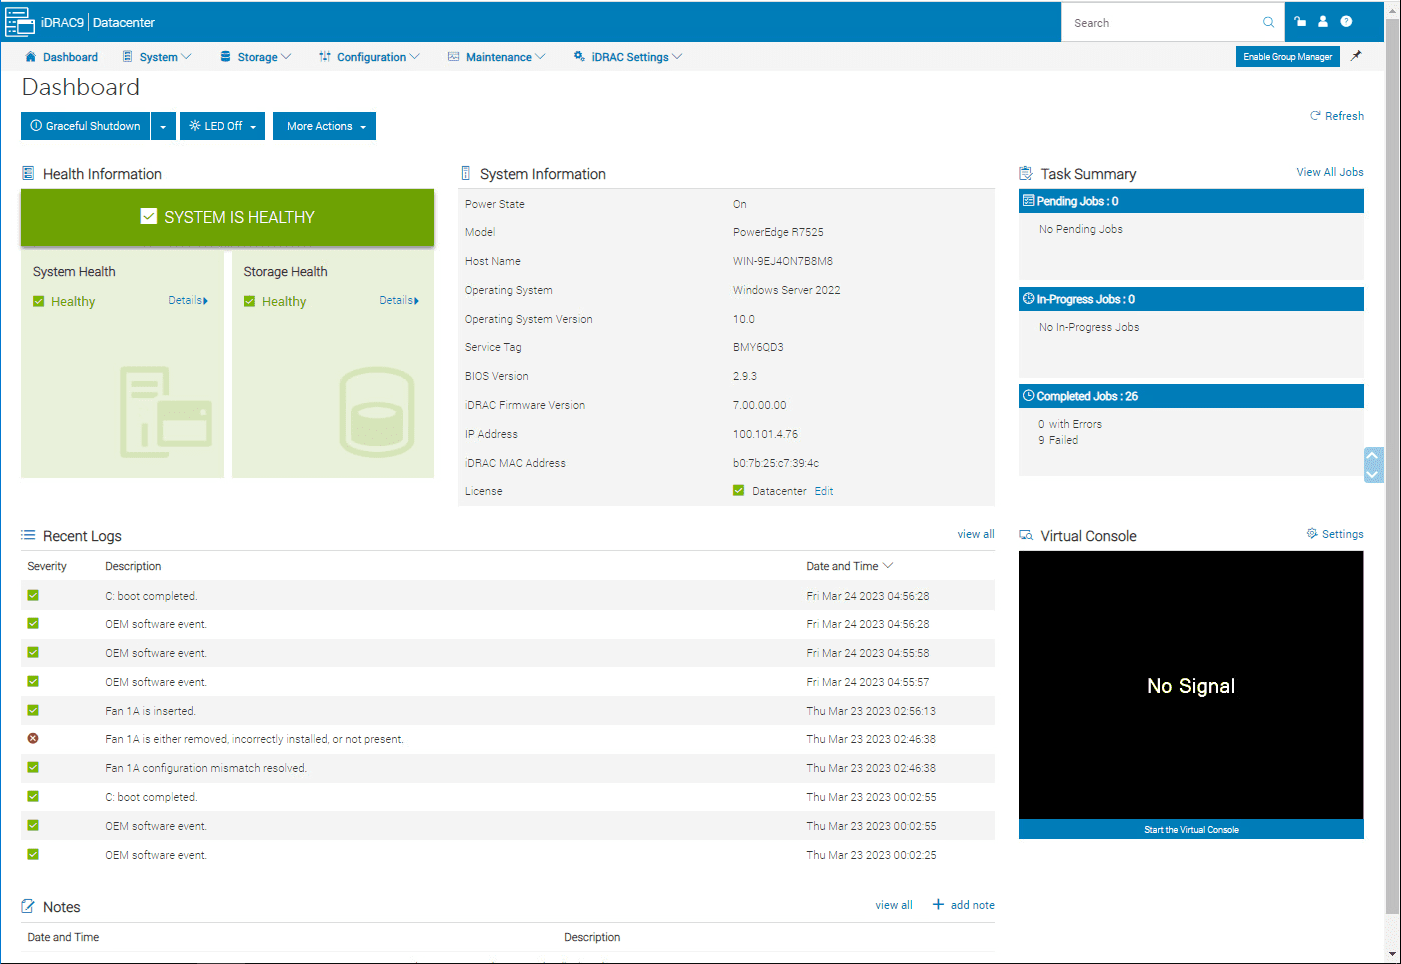 Dell idrac interface